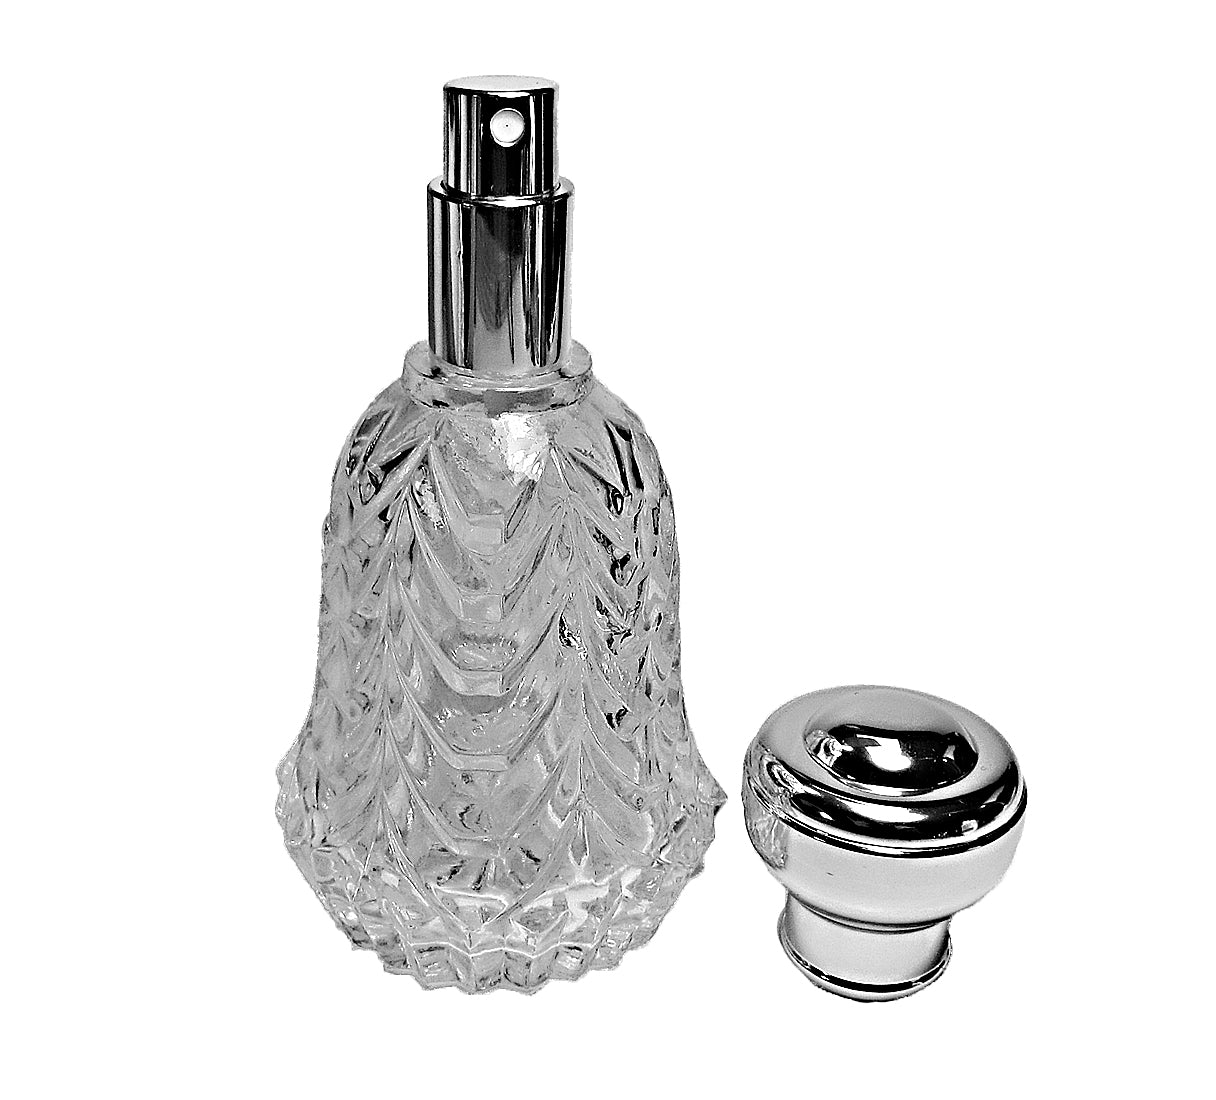 Men's perfume glass bottles